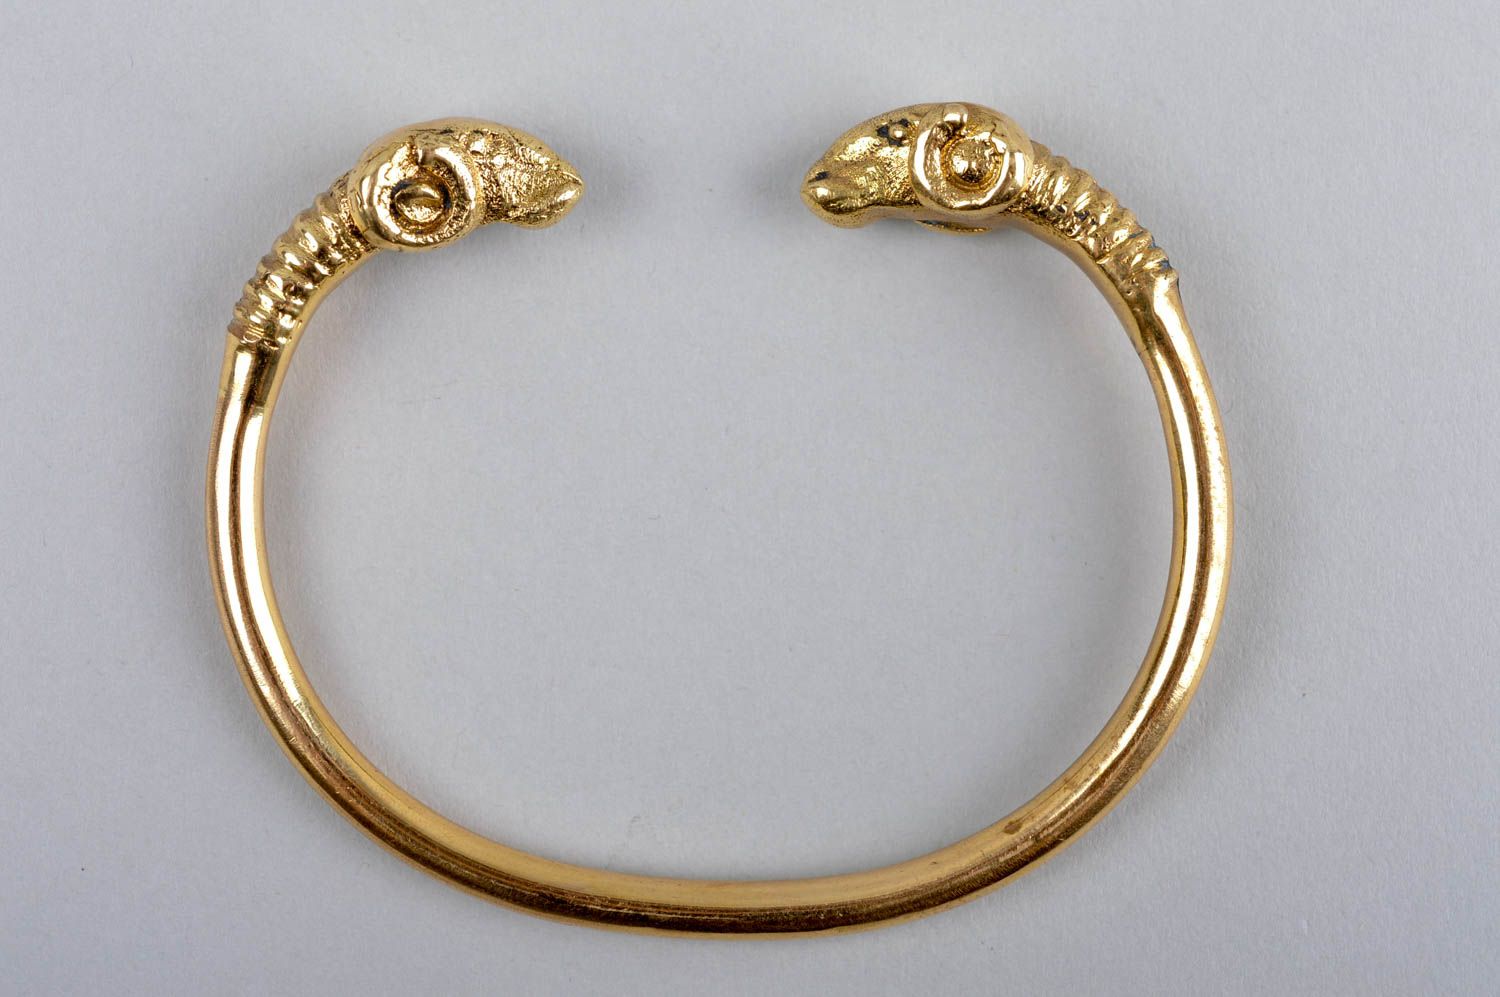 Handmade wrist bracelet unusual brass bracelet stylish metal jewelry gift photo 2